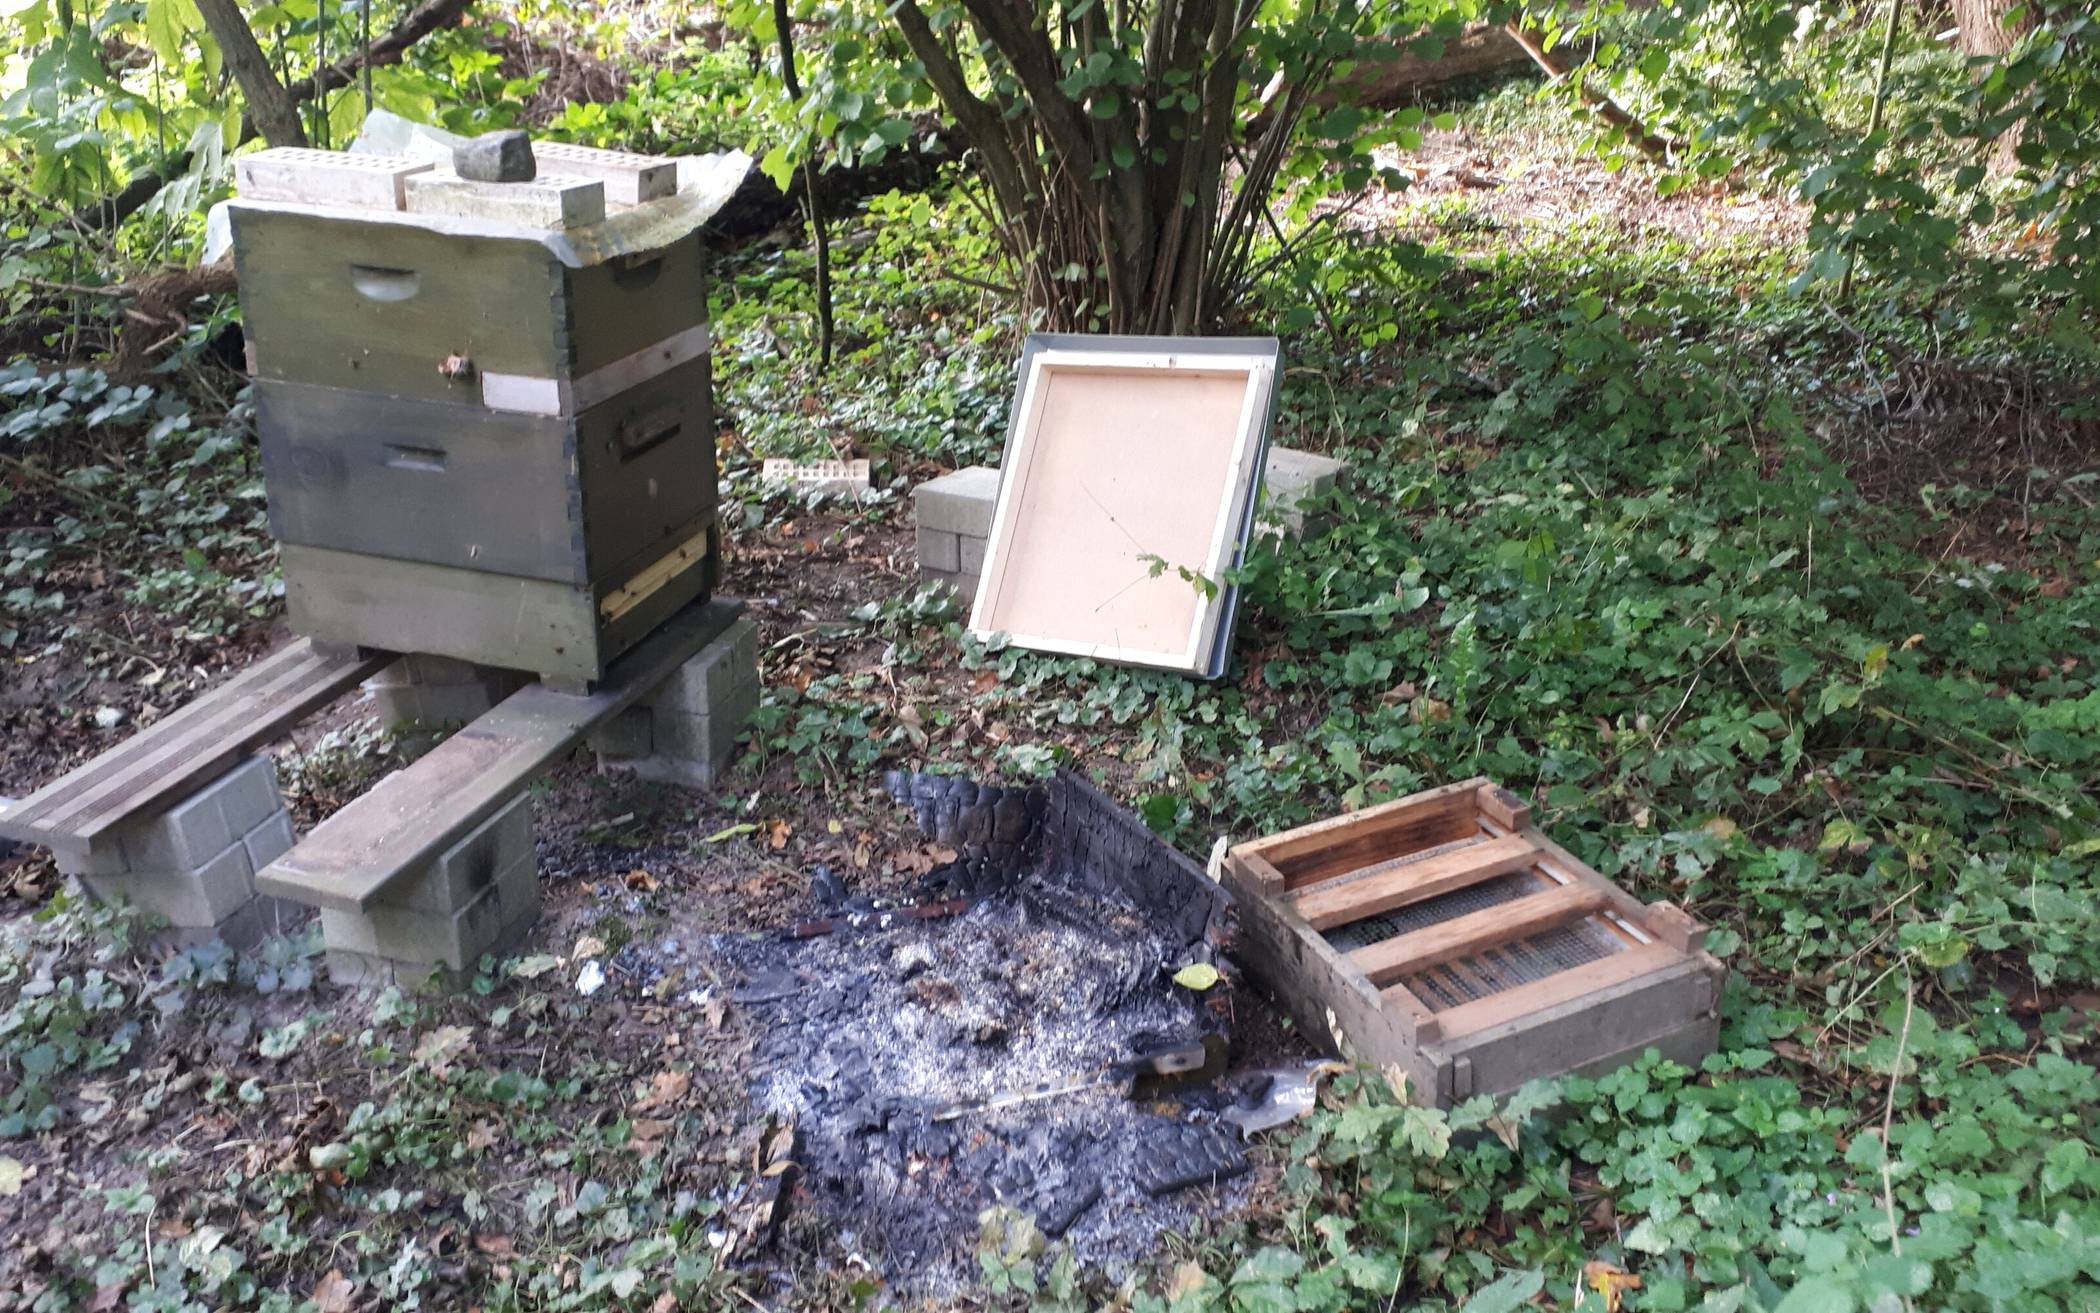  Einer der beiden hölzernen Bienenstöcke in Reuschenberg wurde in Brand gesetzt. PETA setzt jetzt eine Belohnung aus für Hinweise, die zur Ergreifung der tatverantwortlichen Personen führen.  